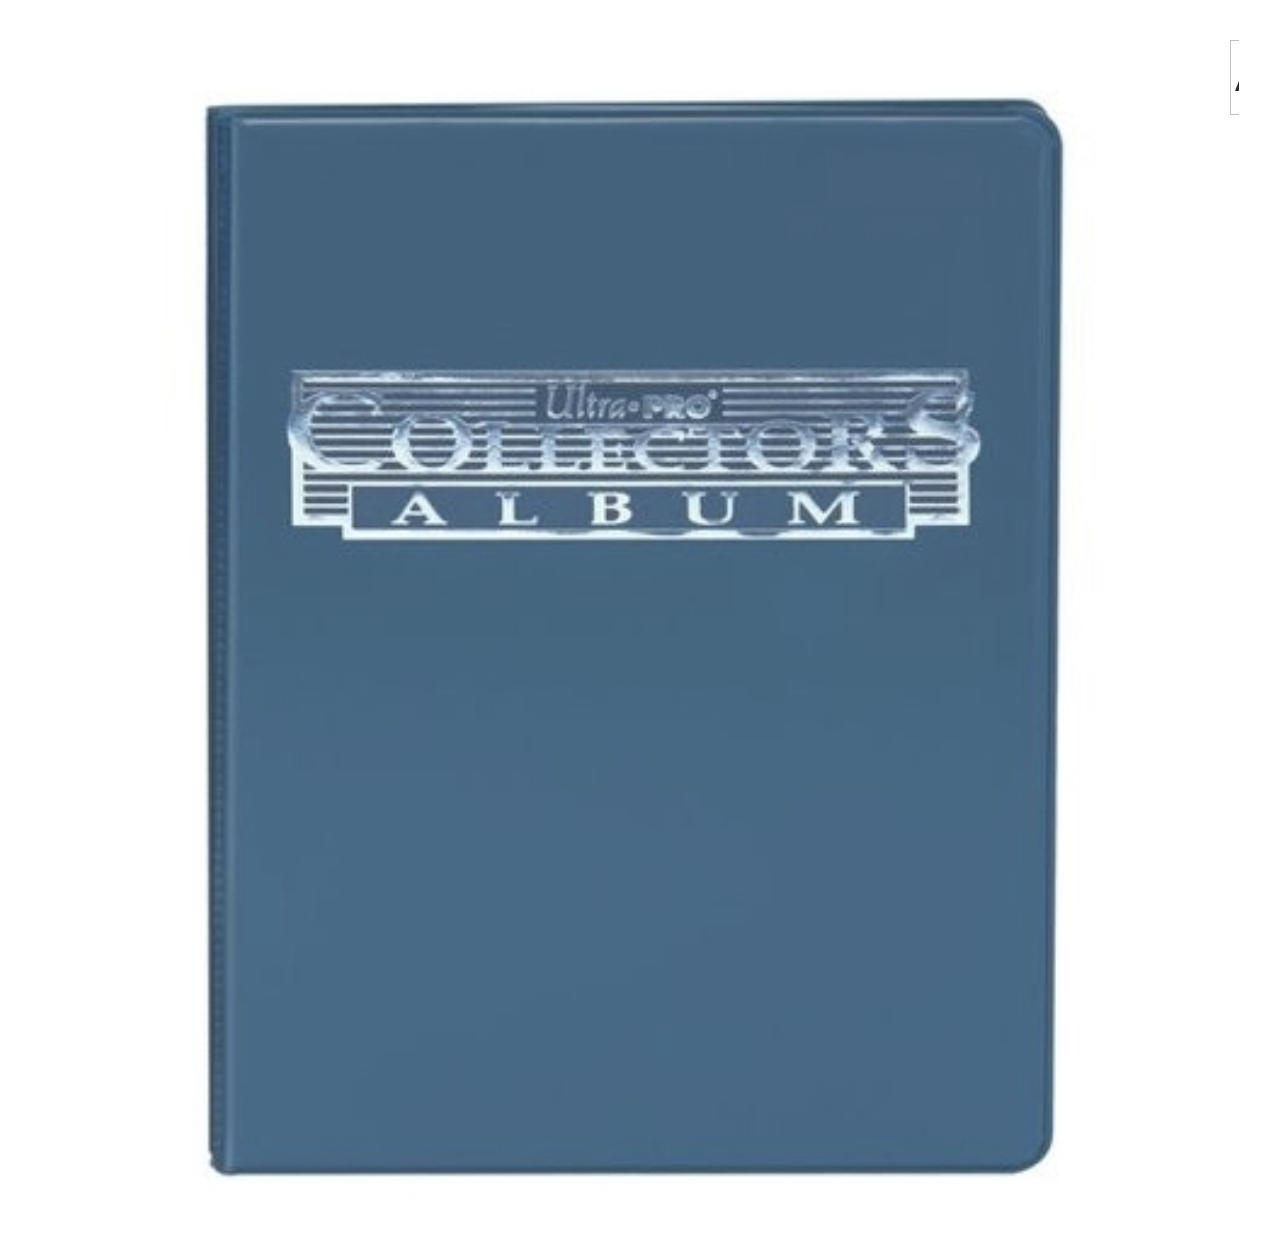 Album 4 Tasche - Collectors Album - Blue - Ultra Pro - Near07 Store